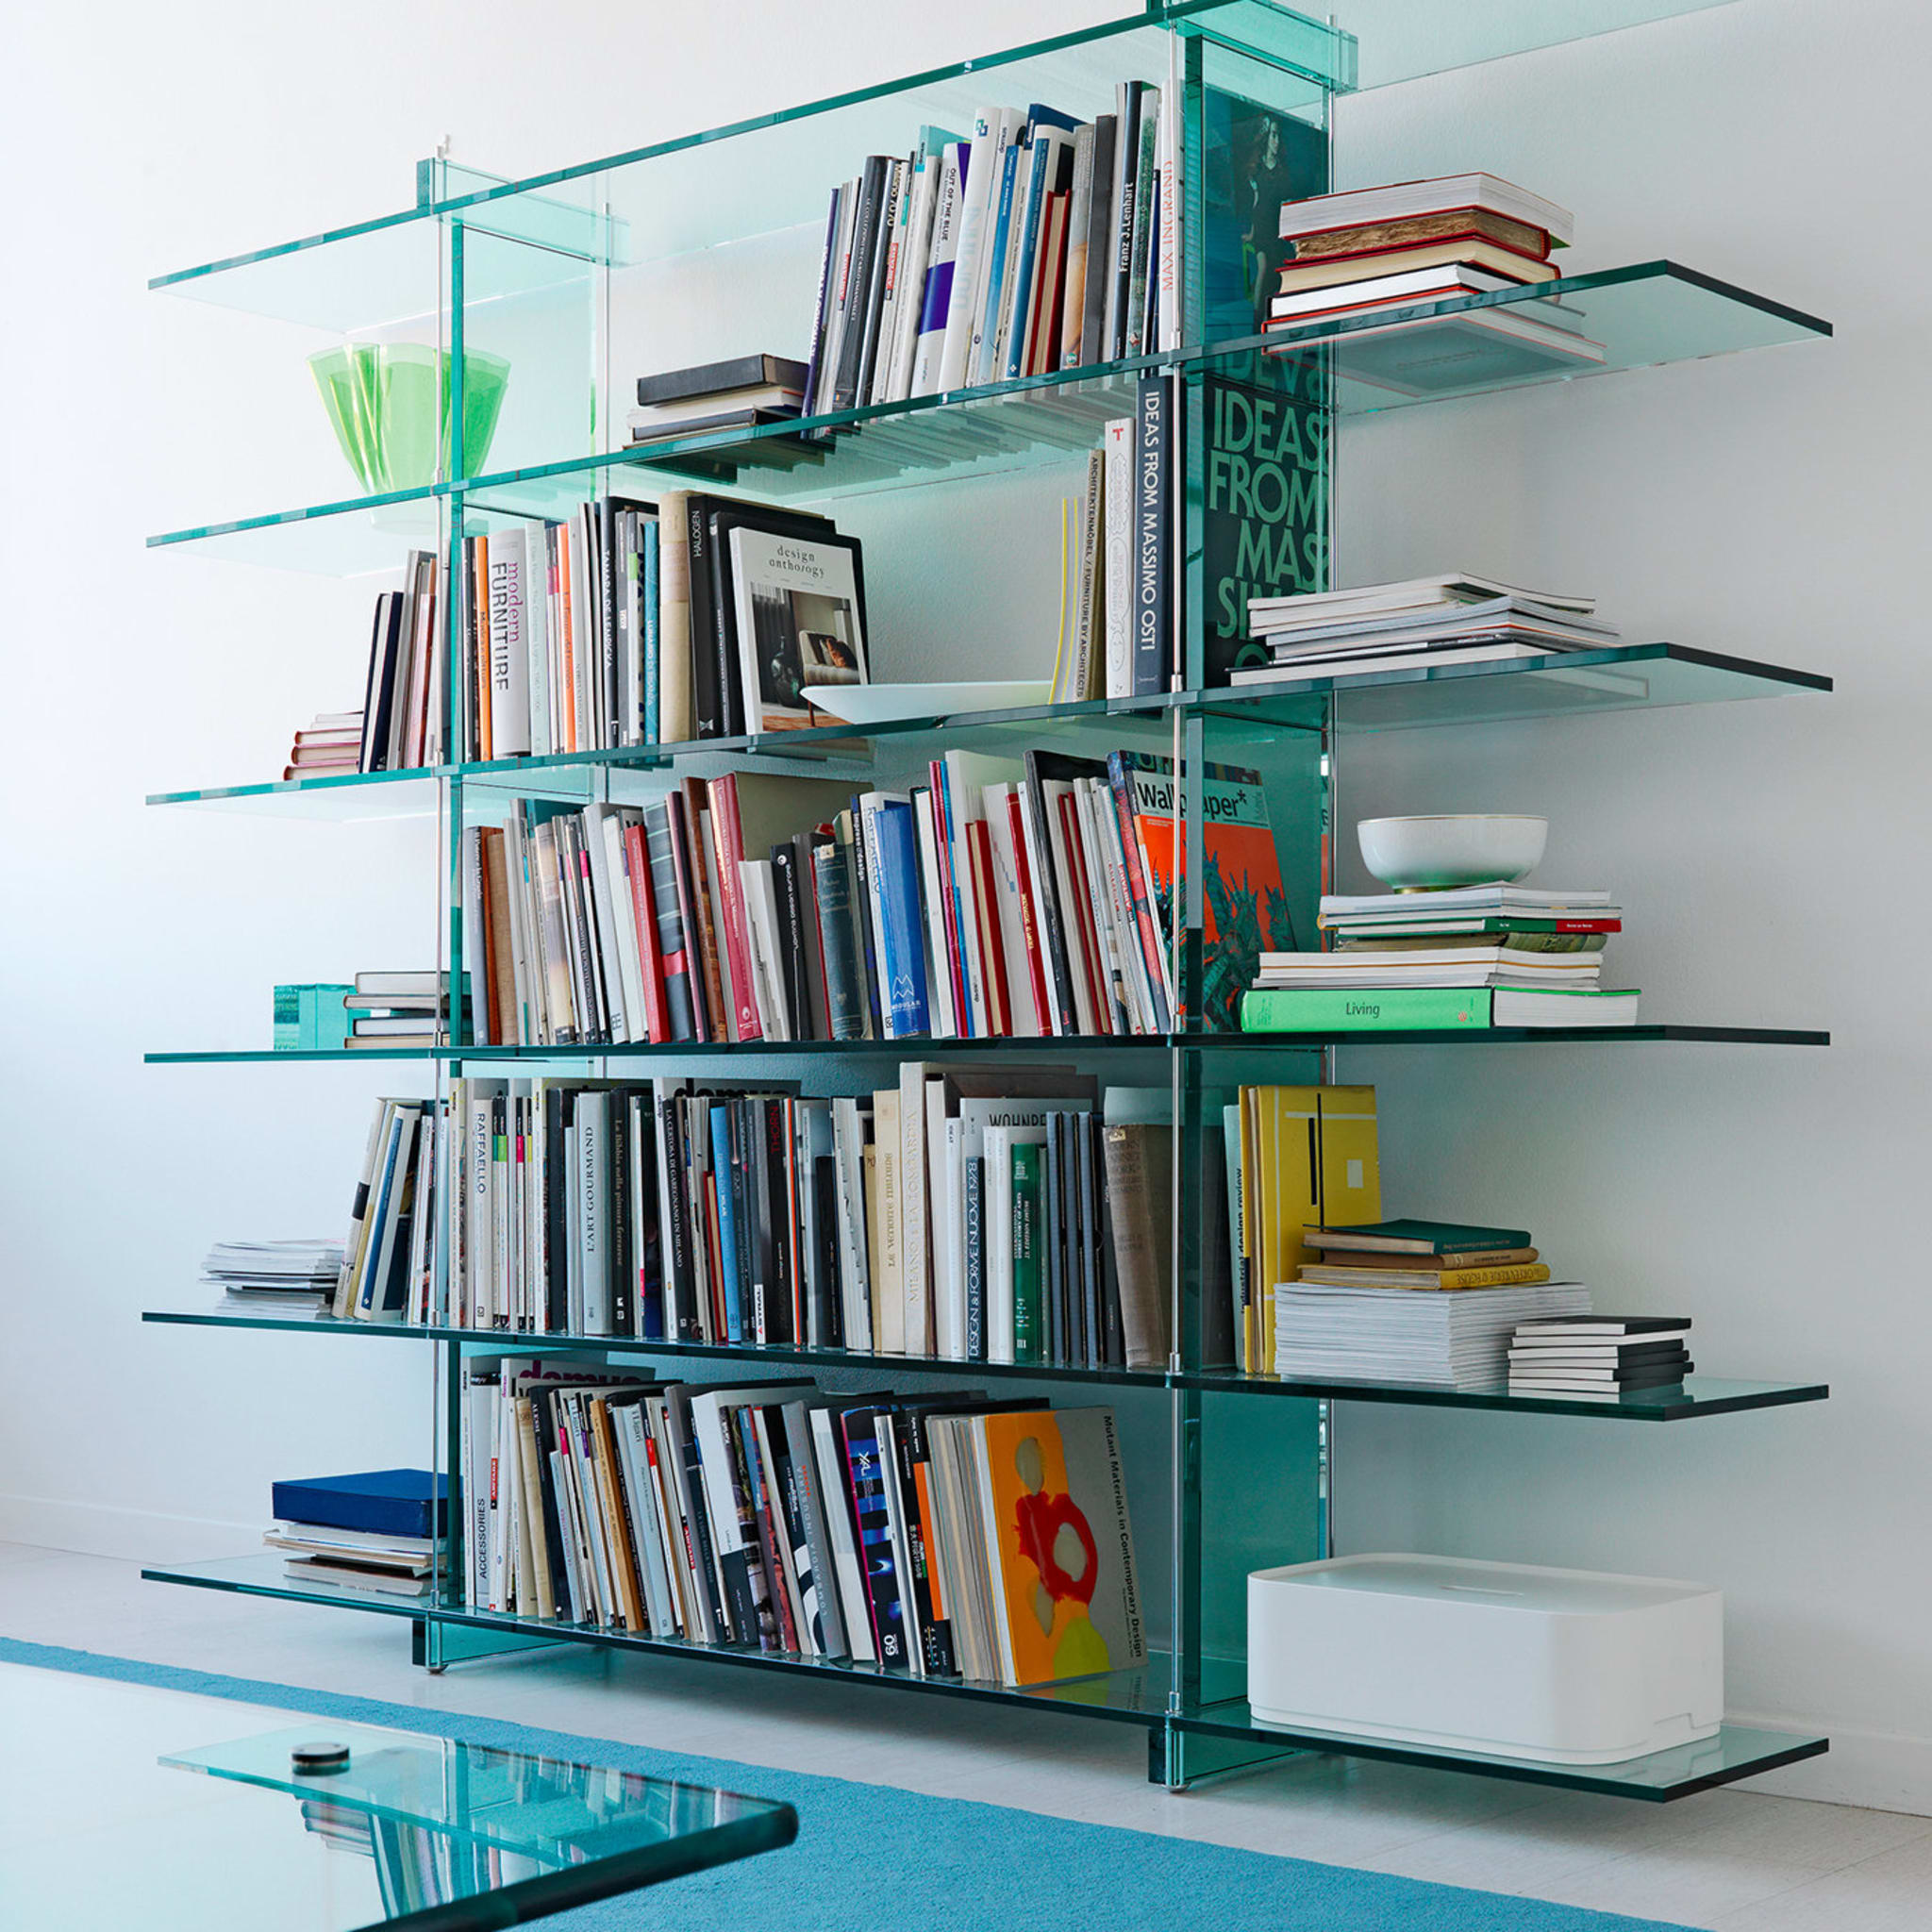 Teso Bookcase by Renzo Piano - Alternative view 1